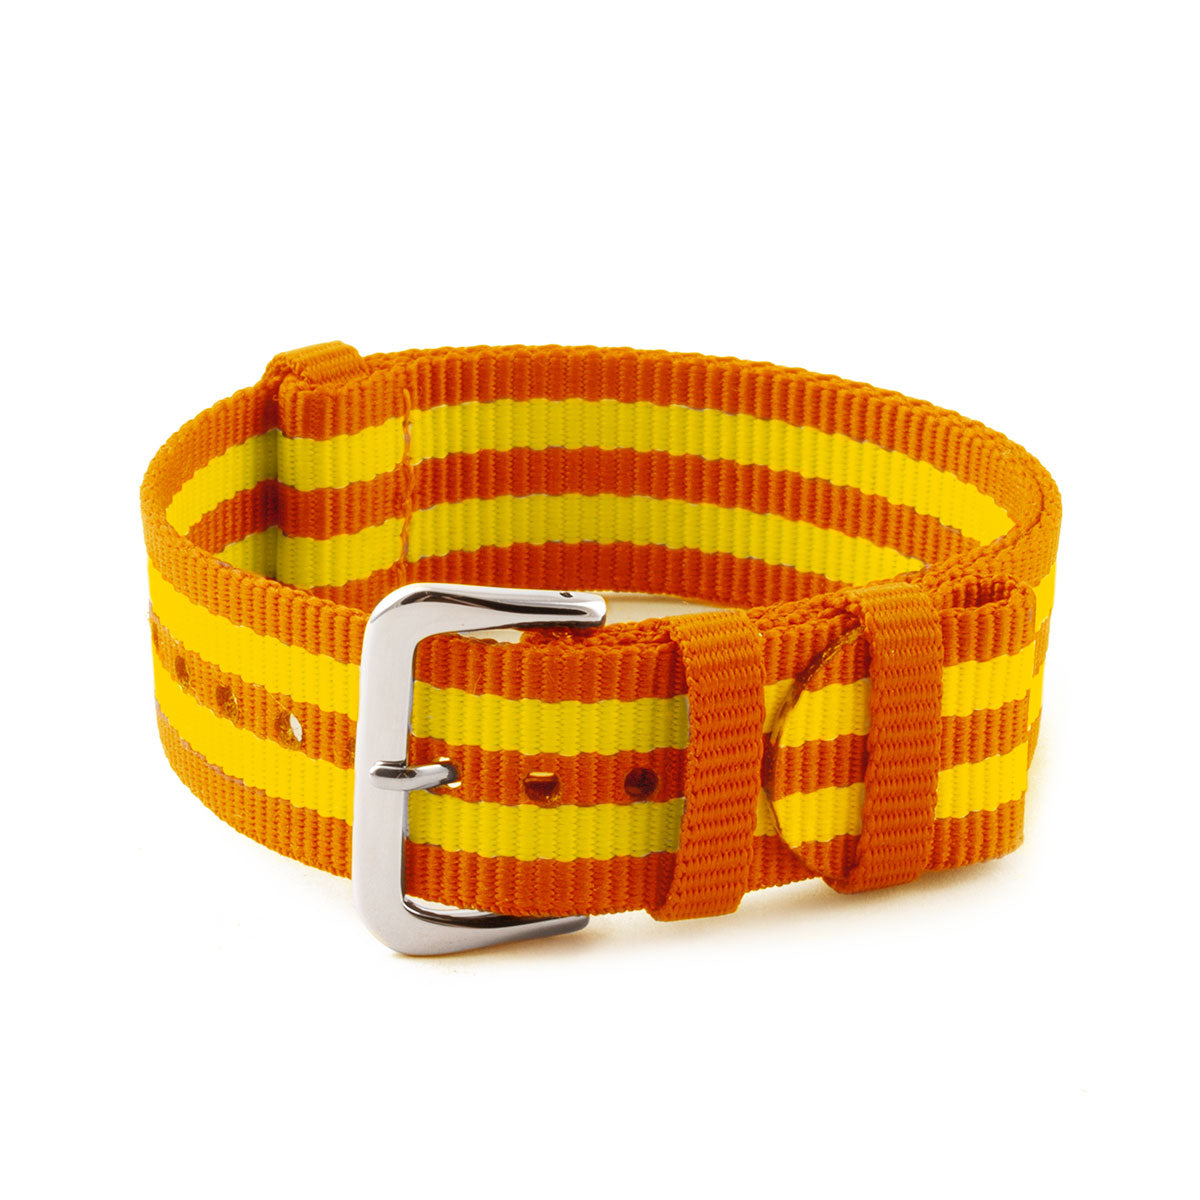 Natocean - Bracelet montre nylon recyclé (noir, gris, blanc, beige, bleu, marron, vert, orange, jaune)